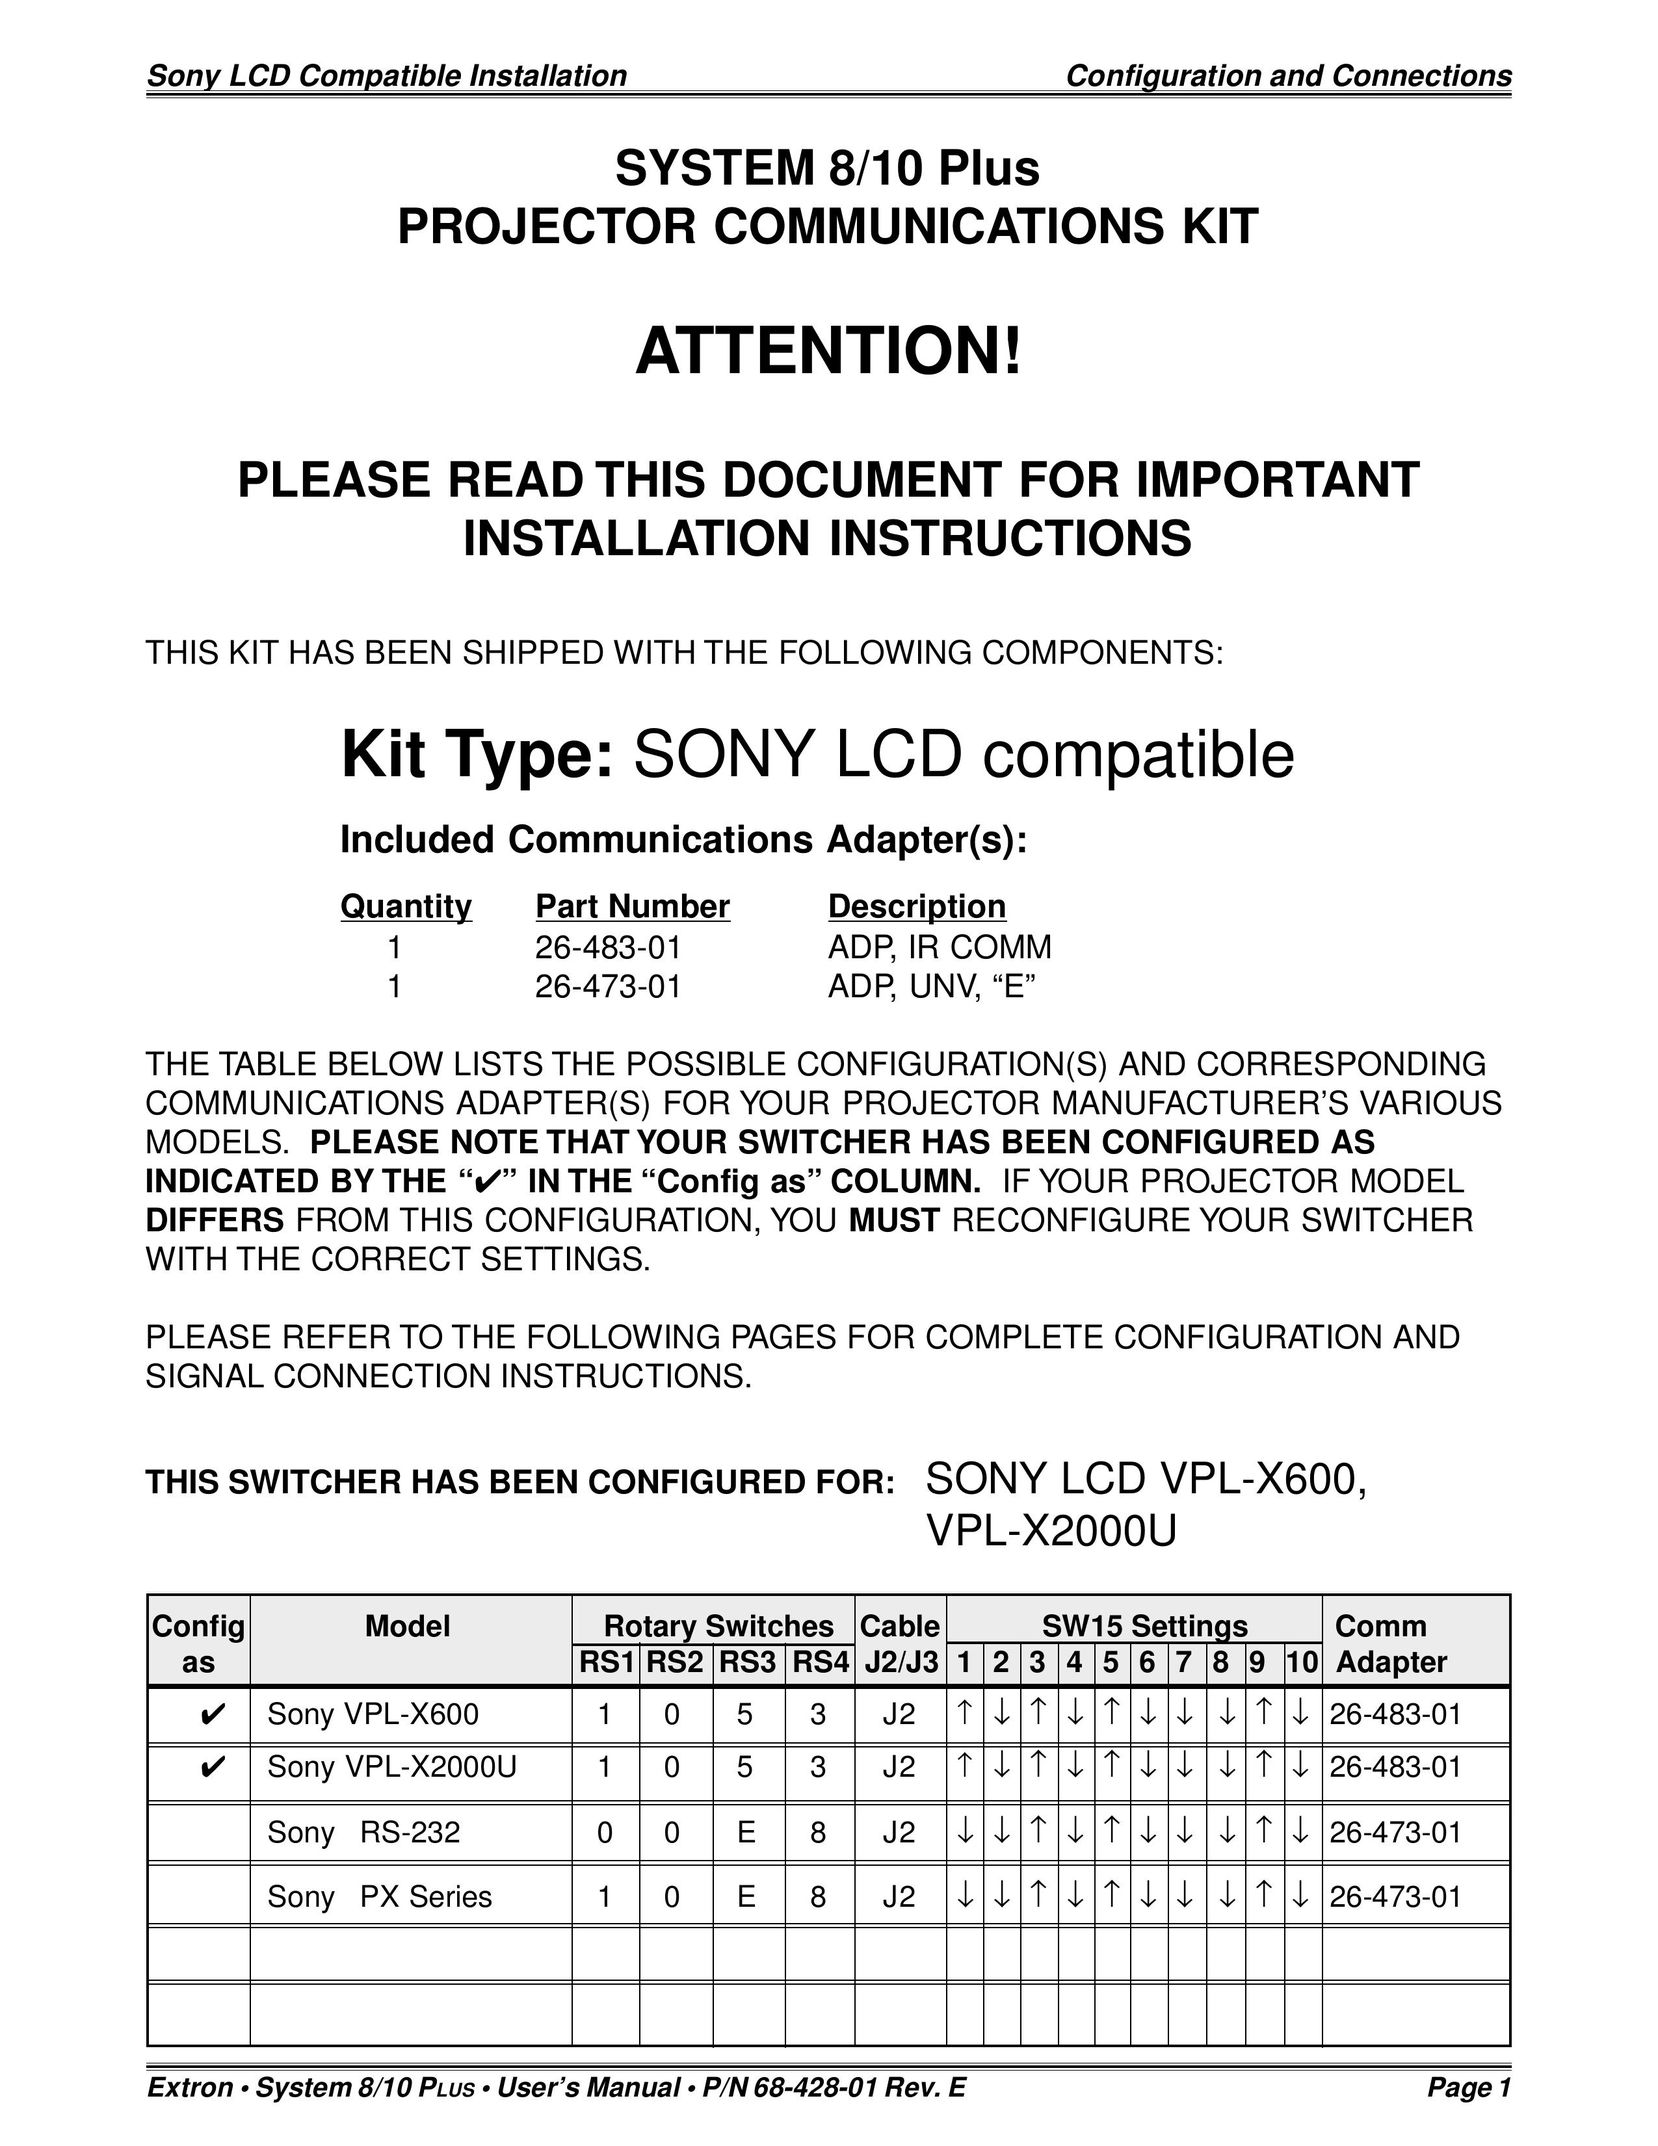 Sony 26-483-01 Plumbing Product User Manual